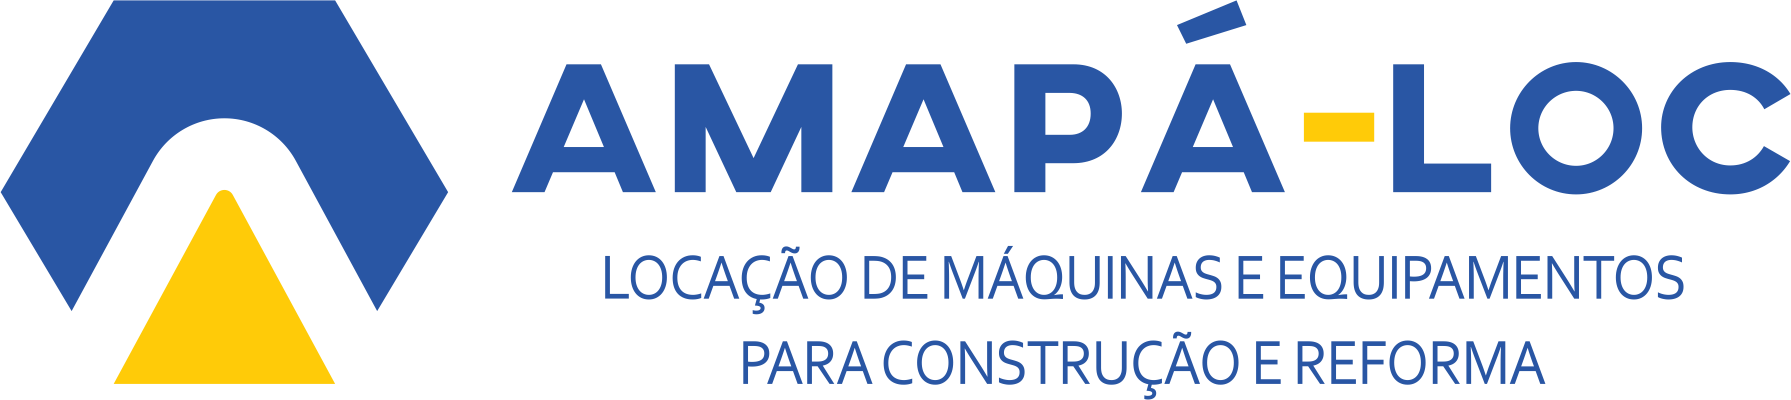 Amapá-Loc Aluguel de Máquinas e Equipamentos para Reforma e Construção.